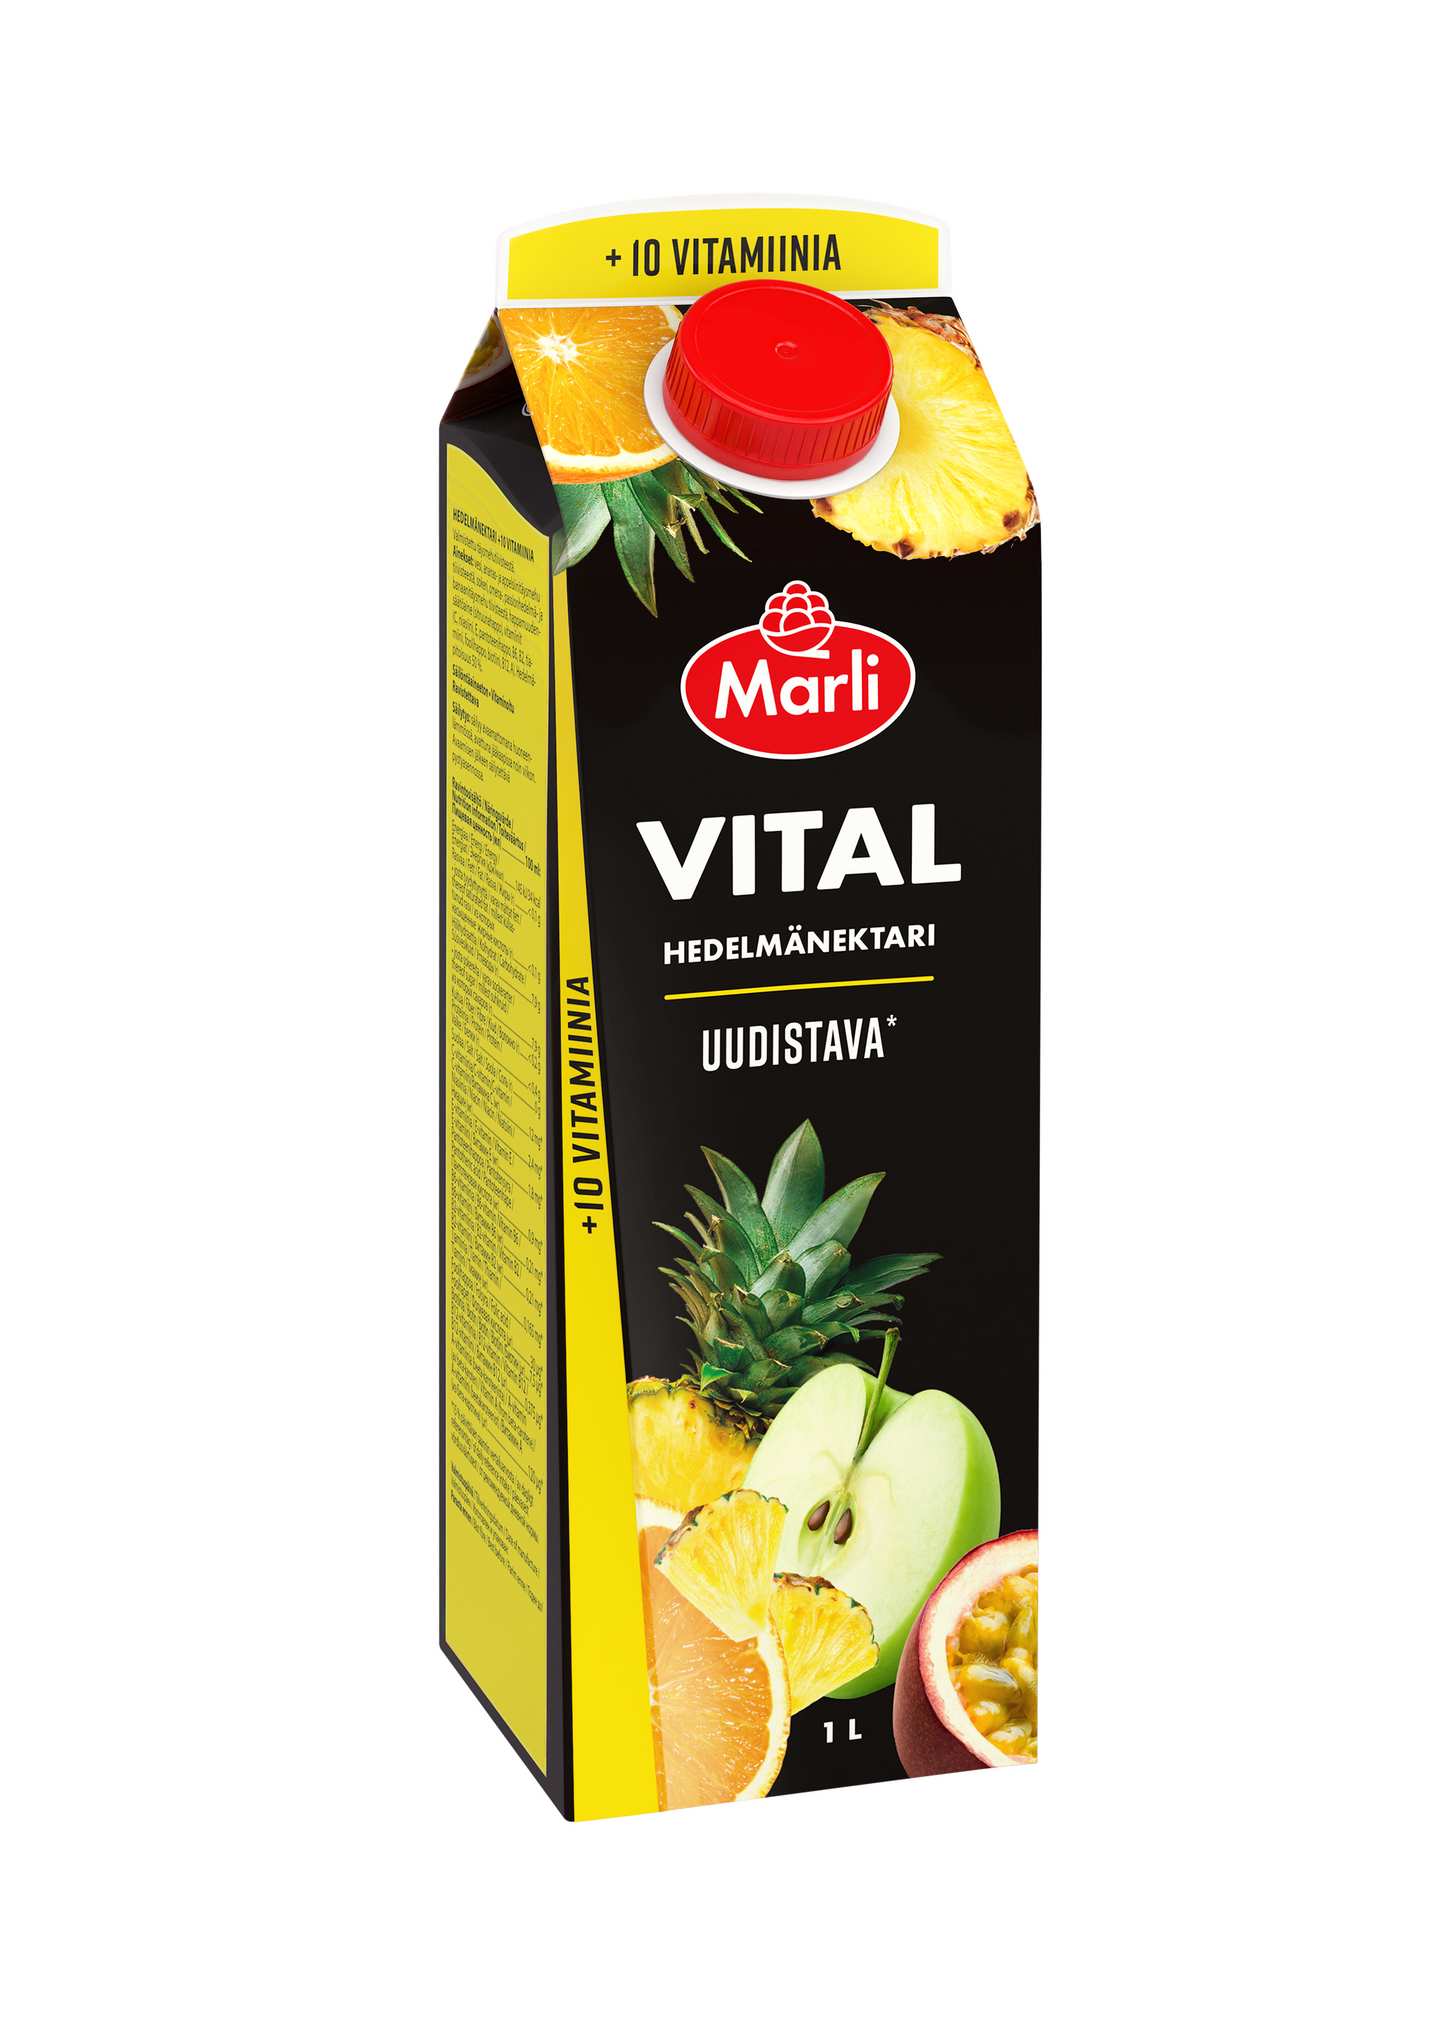 Marli Vital multivitamiininektari 10 vitamiinia 1l